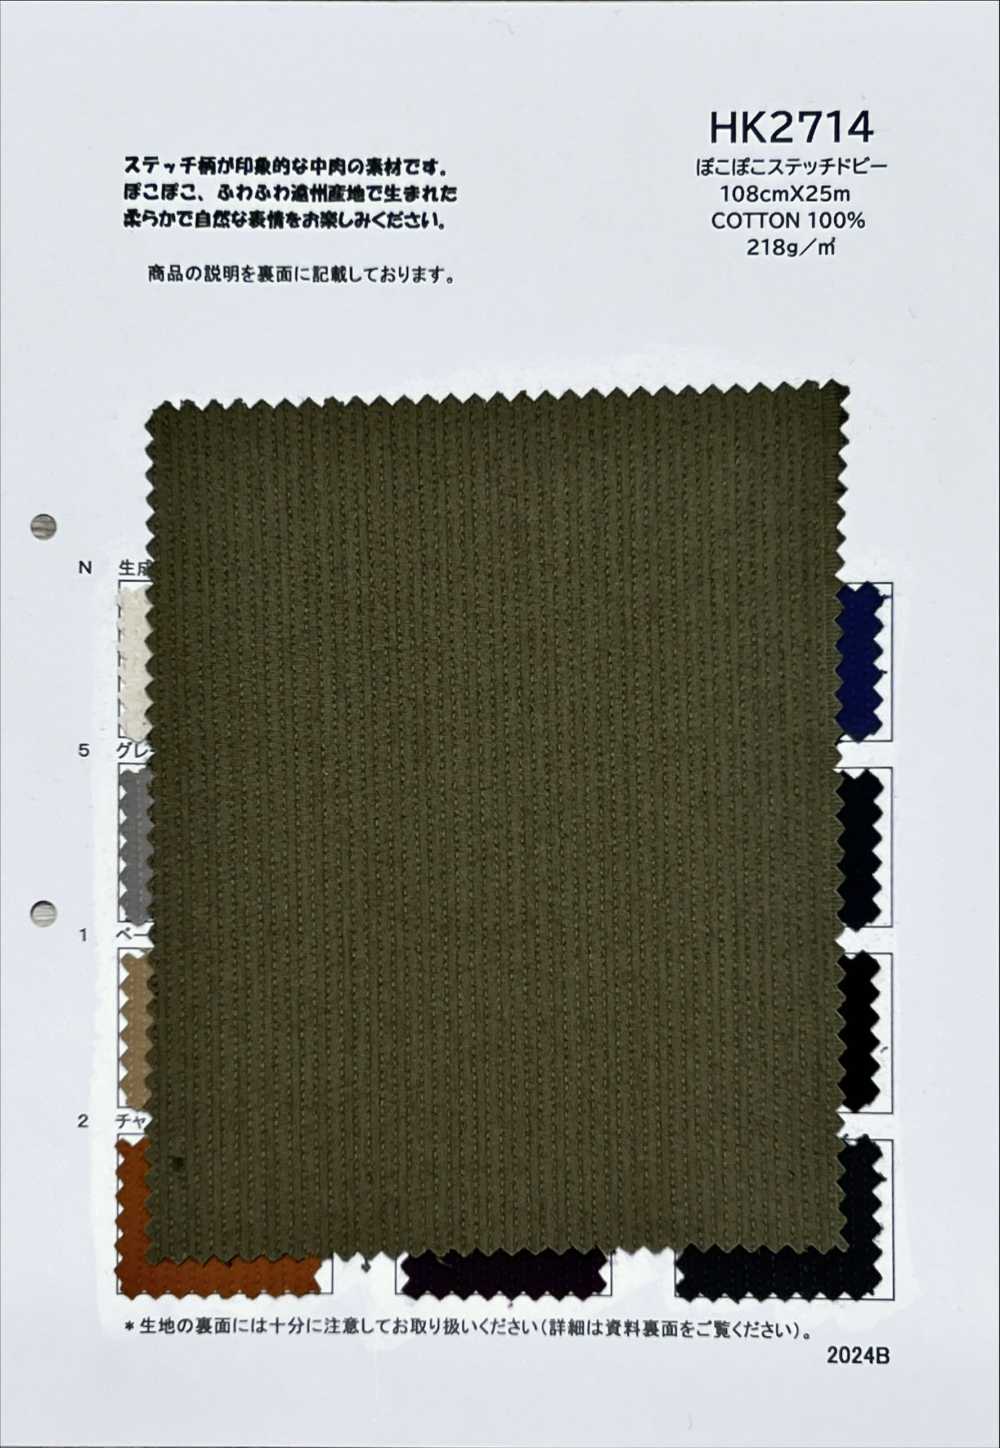 HK2714 Pokopoko Stitch Dobby[Textile / Fabric] KOYAMA